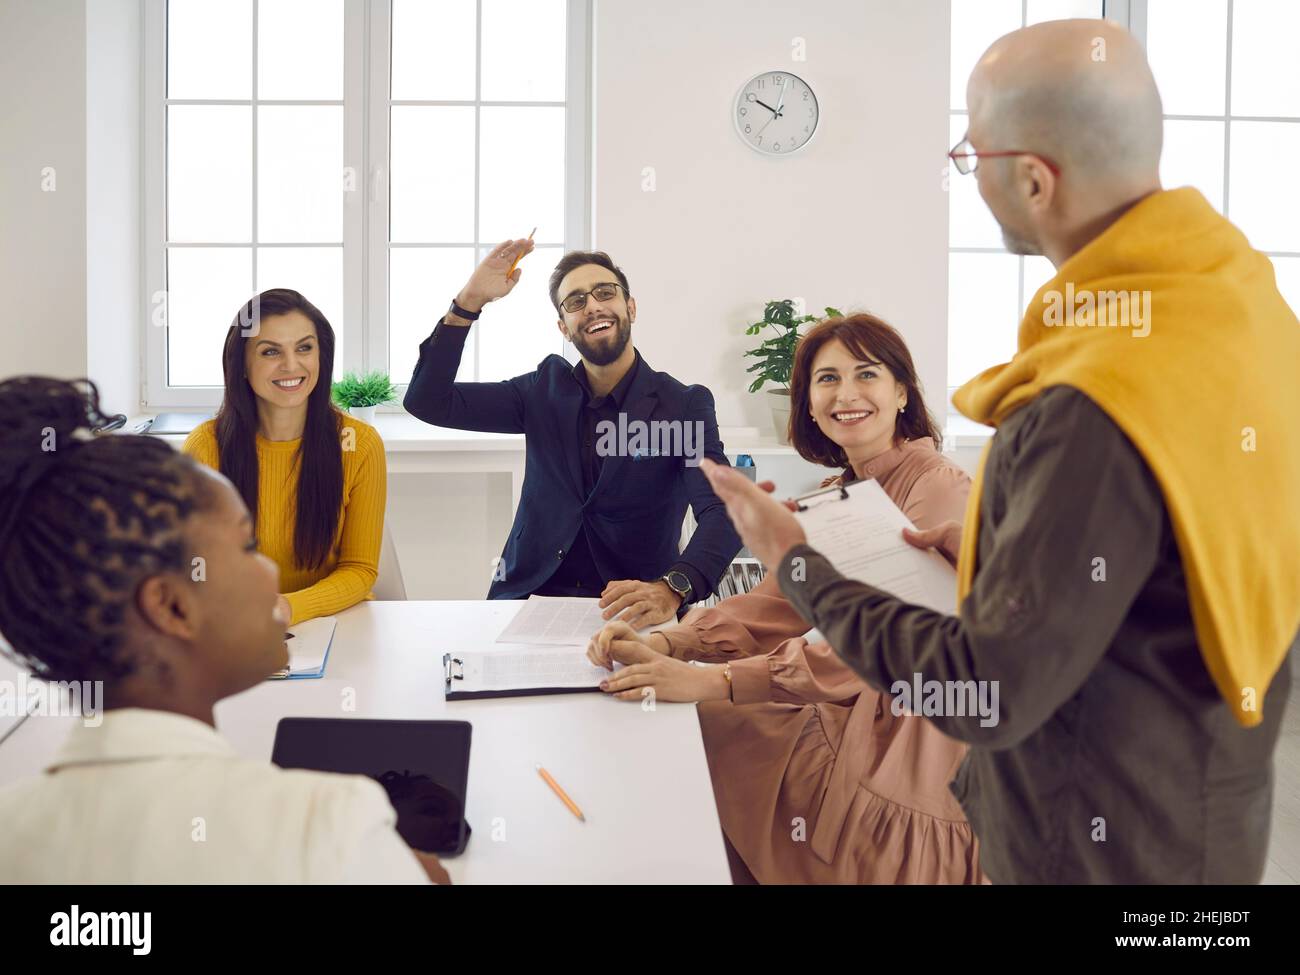 Glücklicher Mann hebt die Hand, um seinem Kollegen während eines Geschäftsmeeting eine Frage zu stellen Stockfoto